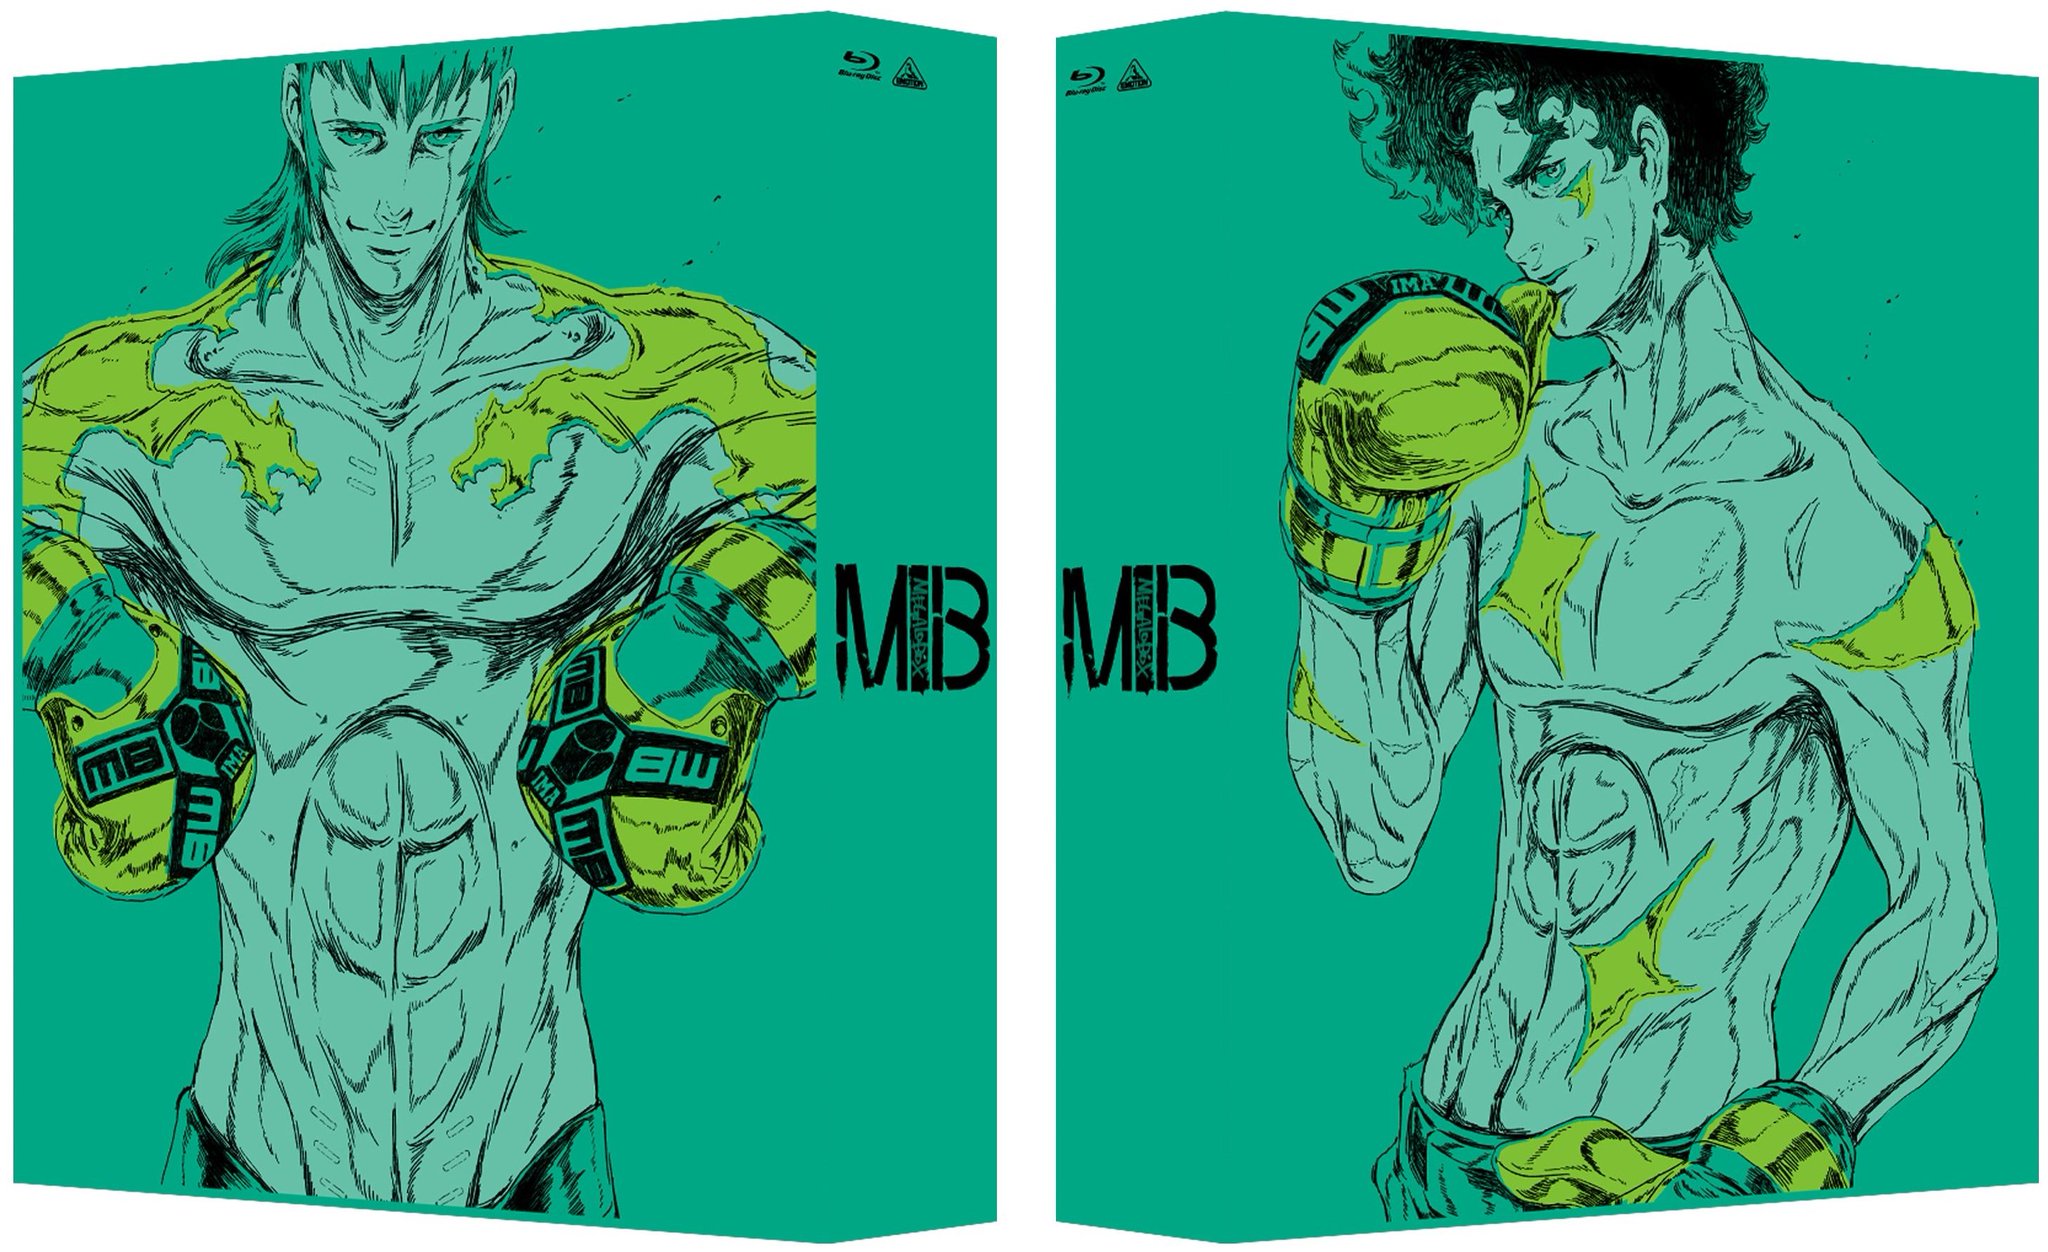 MEGALO BOX Joe MEGALO BOX Yuuri Megalo Box Anime Anime Boys Two Men Boxing Gloves Gloves Brunette Wh 2048x1252